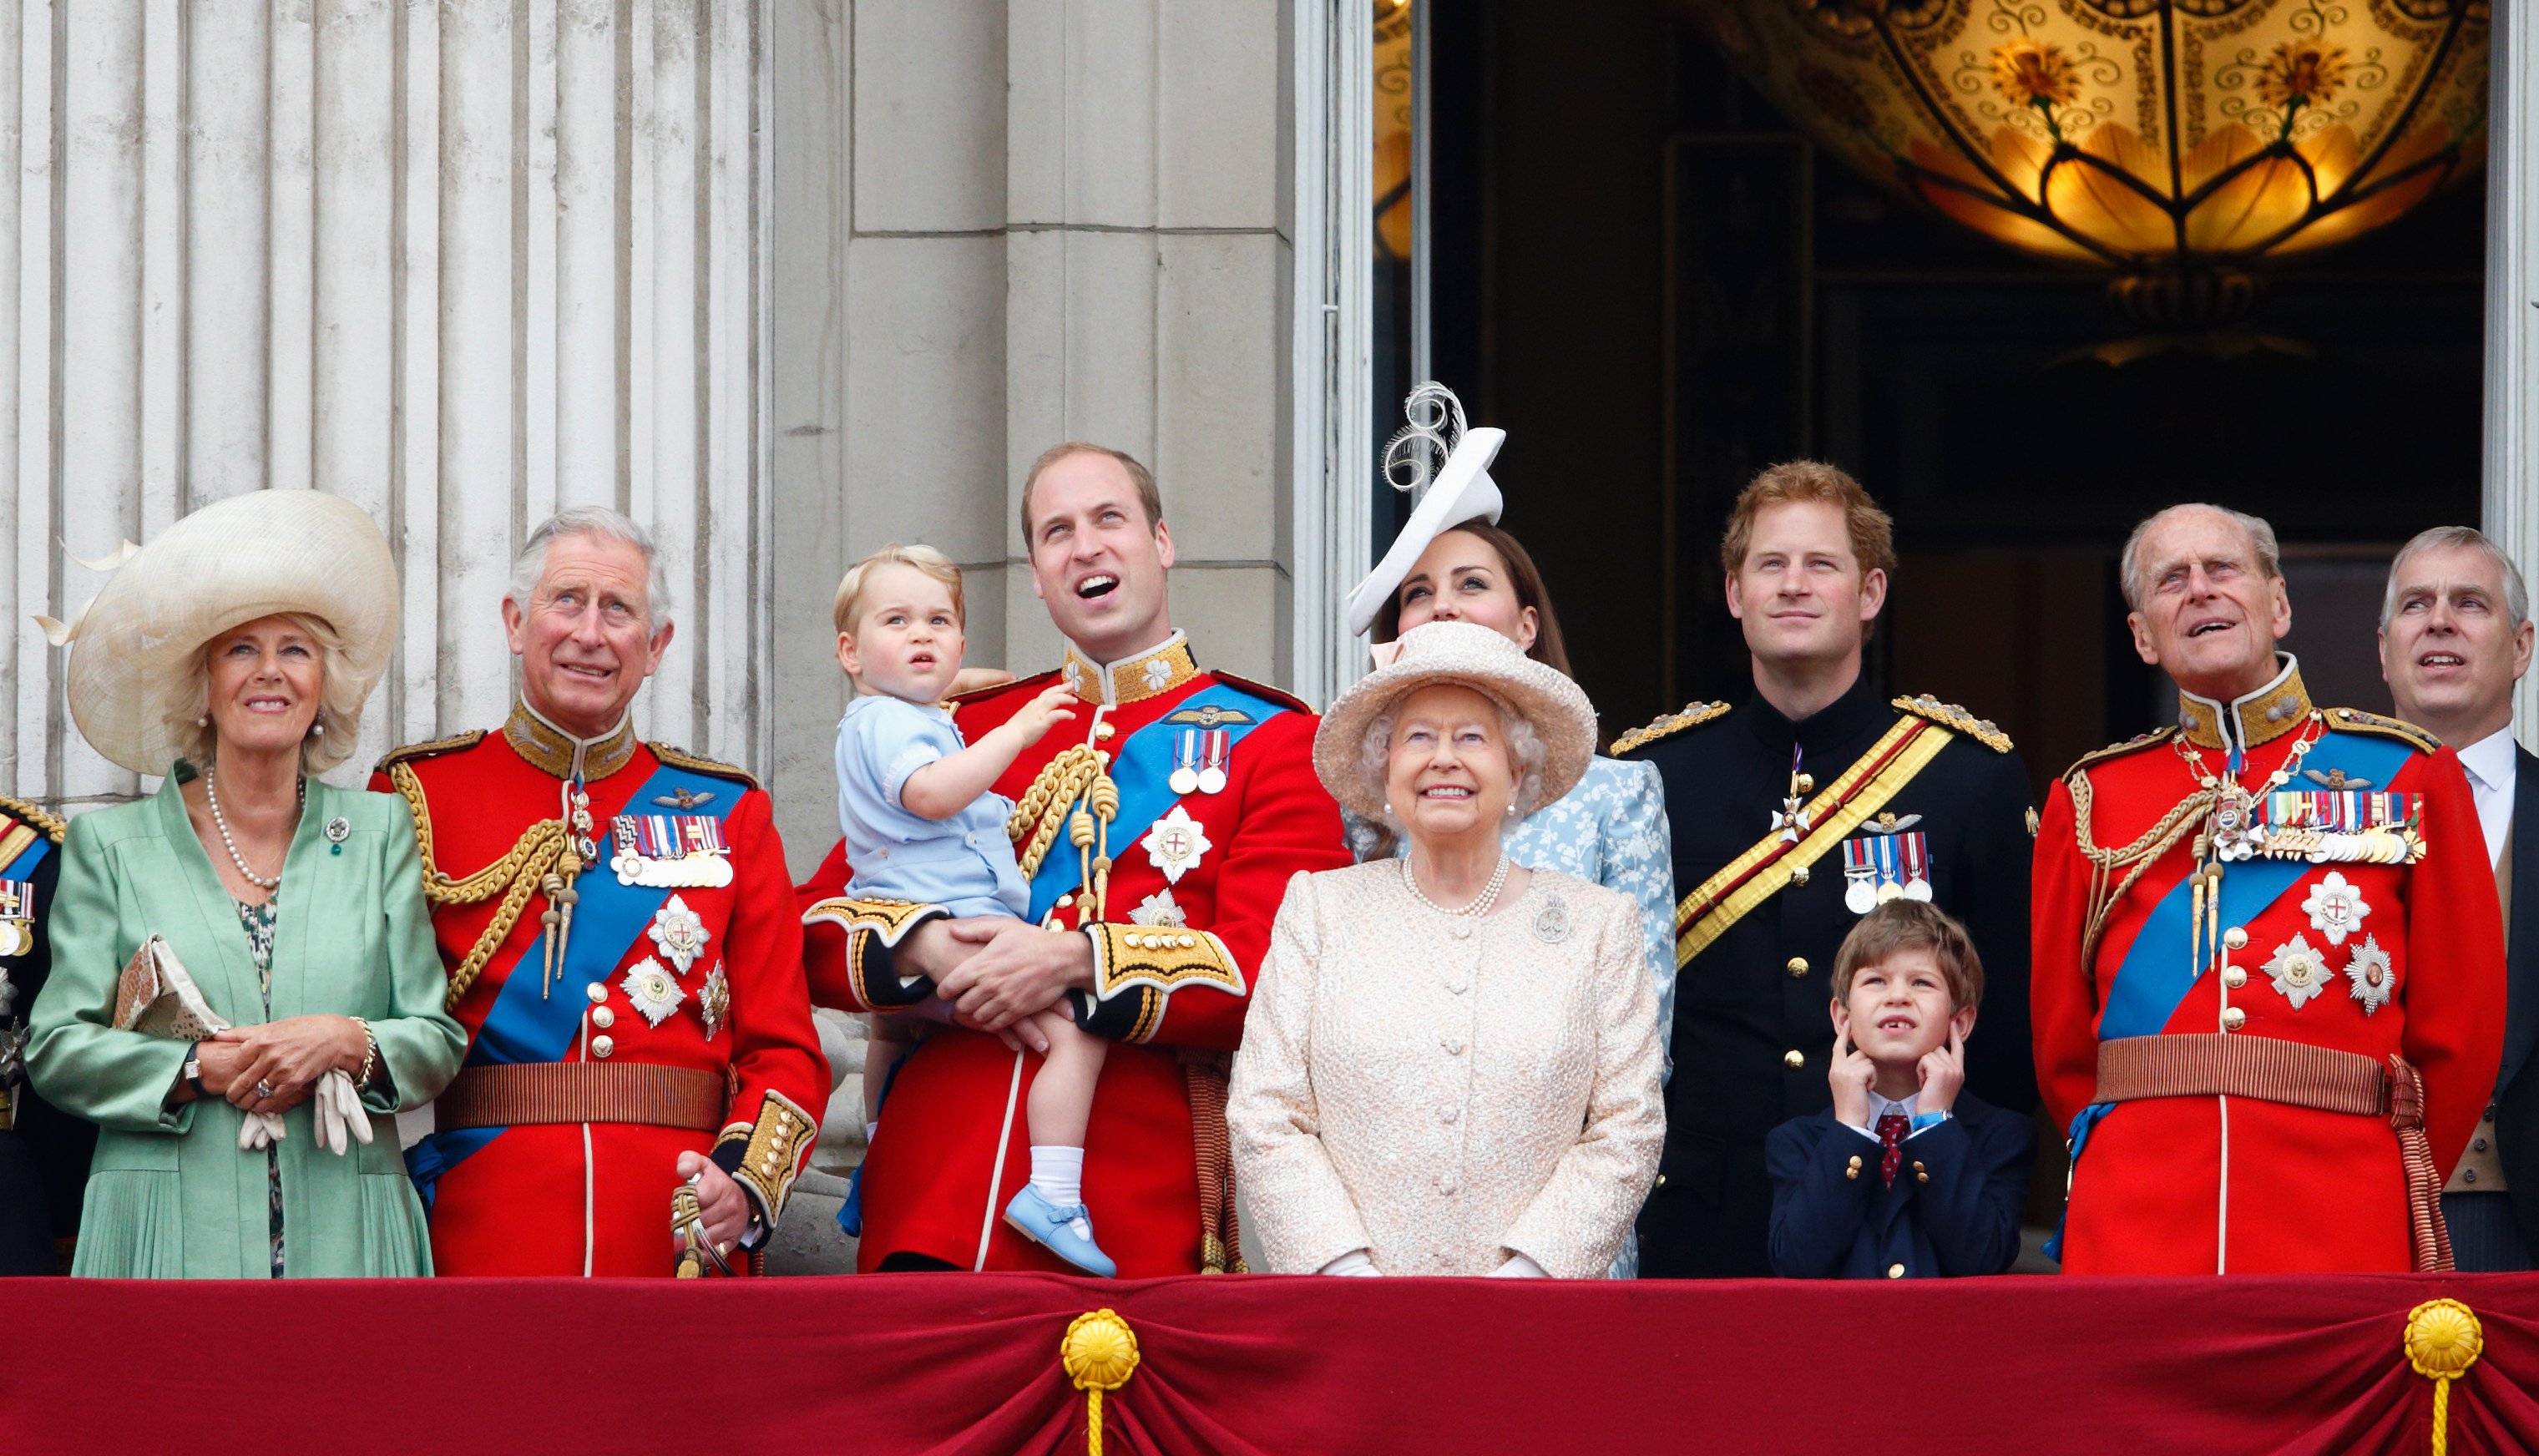 Camilla, la reina consorte, el rey Charles III, el príncipe William, el príncipe George, Catherine, duquesa de Cambridge, la reina Elizabeth II, el príncipe Harry, James, el vizconde Severn y el príncipe Philip, duque de Edimburgo, de pie en el balcón del Palacio de Buckingham el 13 de junio de 2015, en Londres, Inglaterra. | Foto: Getty Images